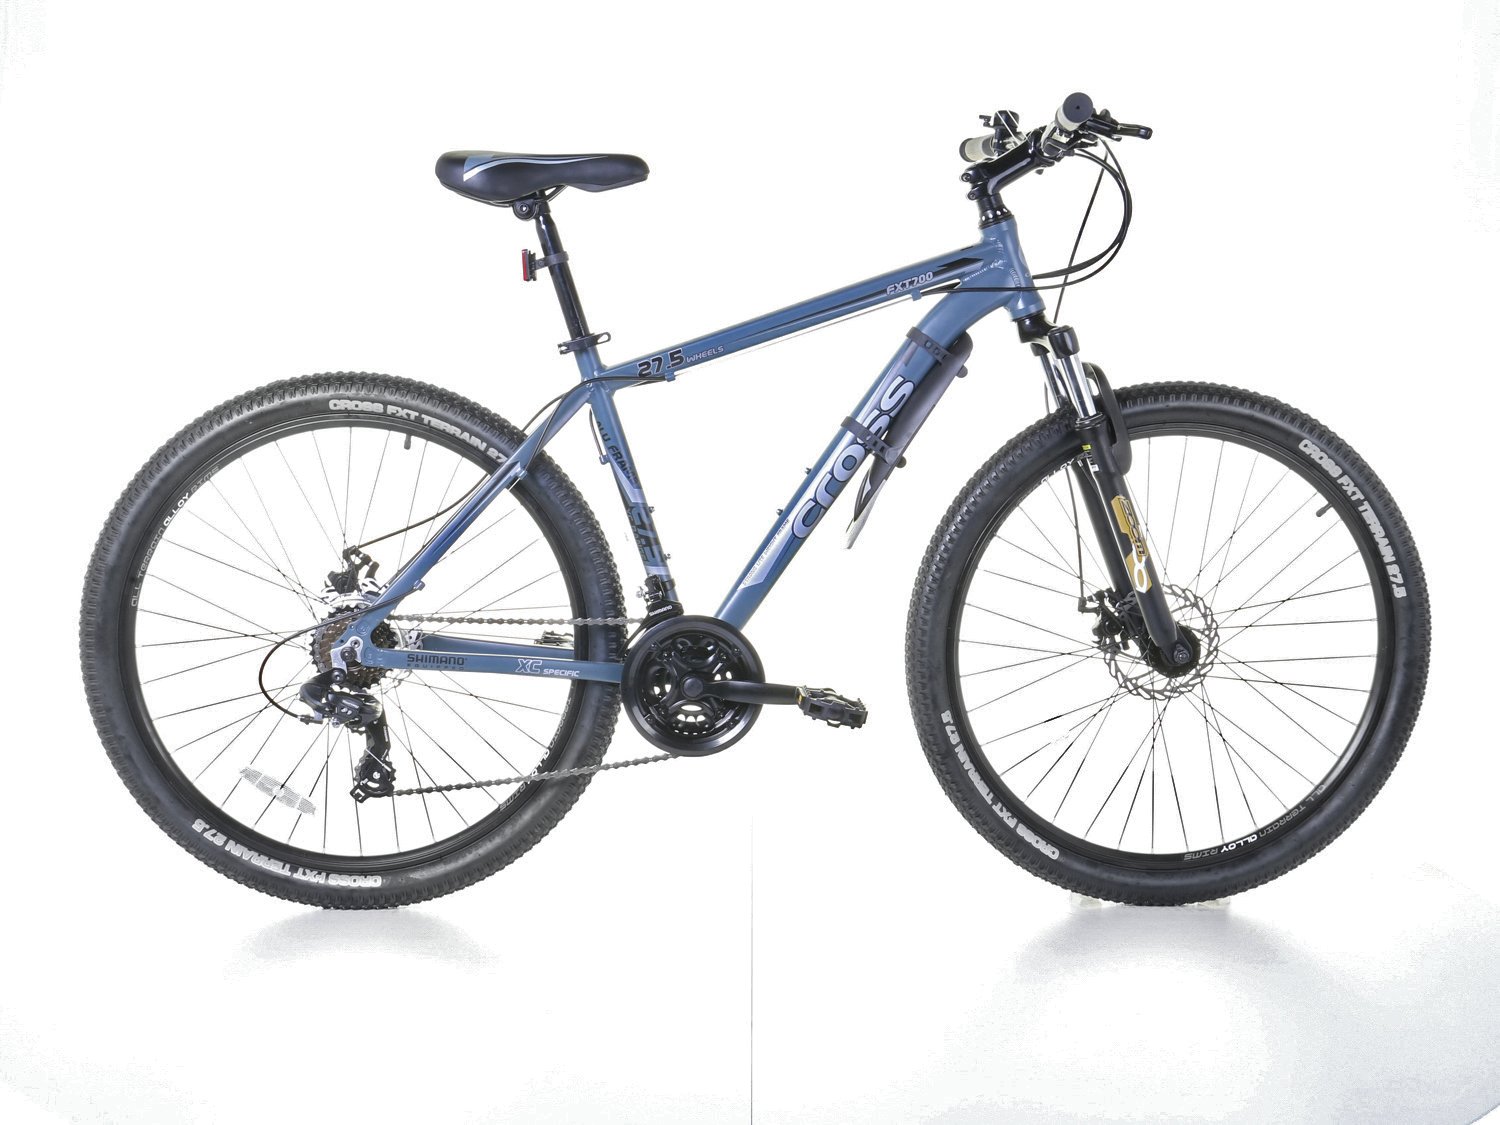 cross fs275fx7 27.5 inch wheel size mens mountain bike